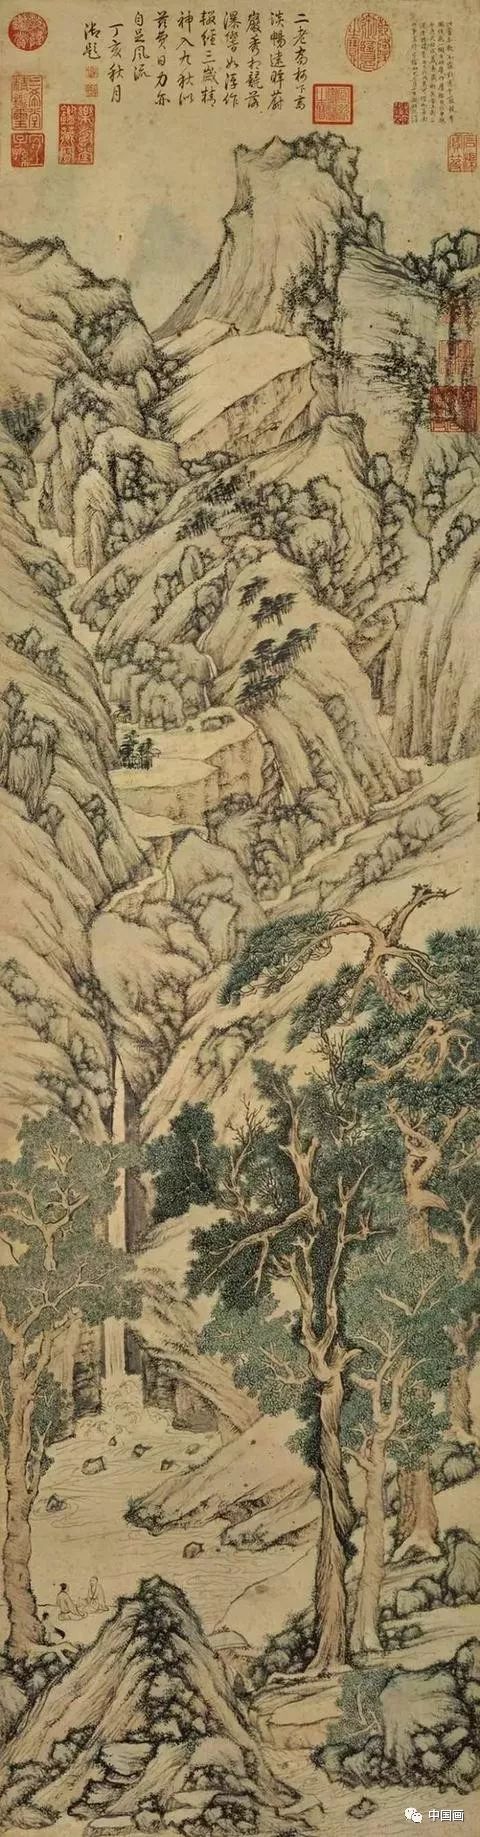 速览中国山水画史